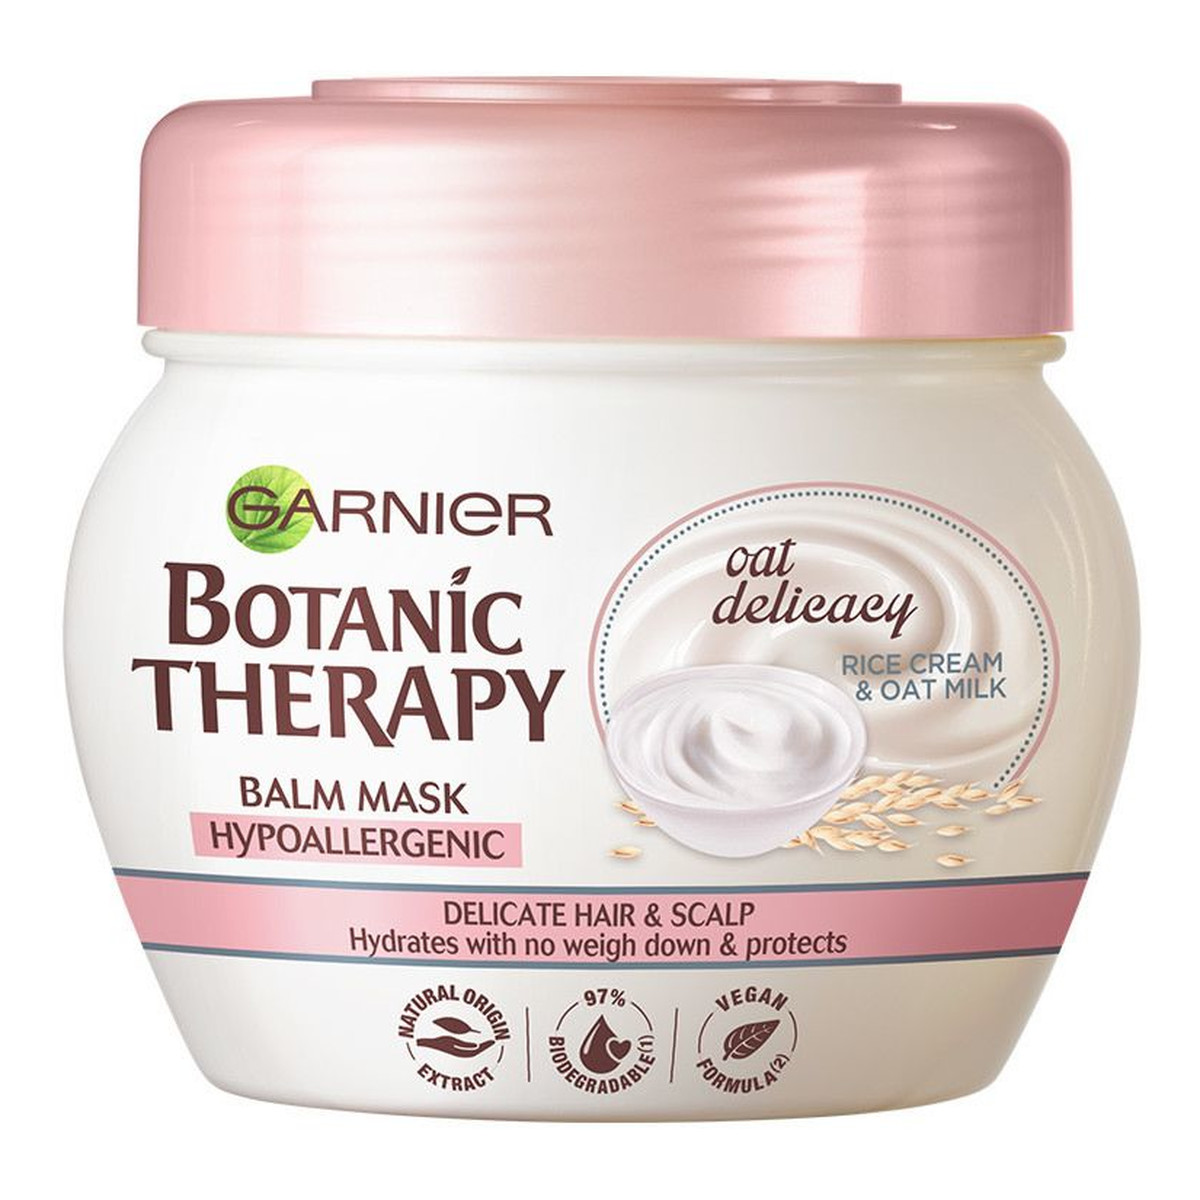 Garnier Botanic Therapy Oat Delicacy hipoalergiczna maska do delikatnych włosów i skóry głowy 300ml